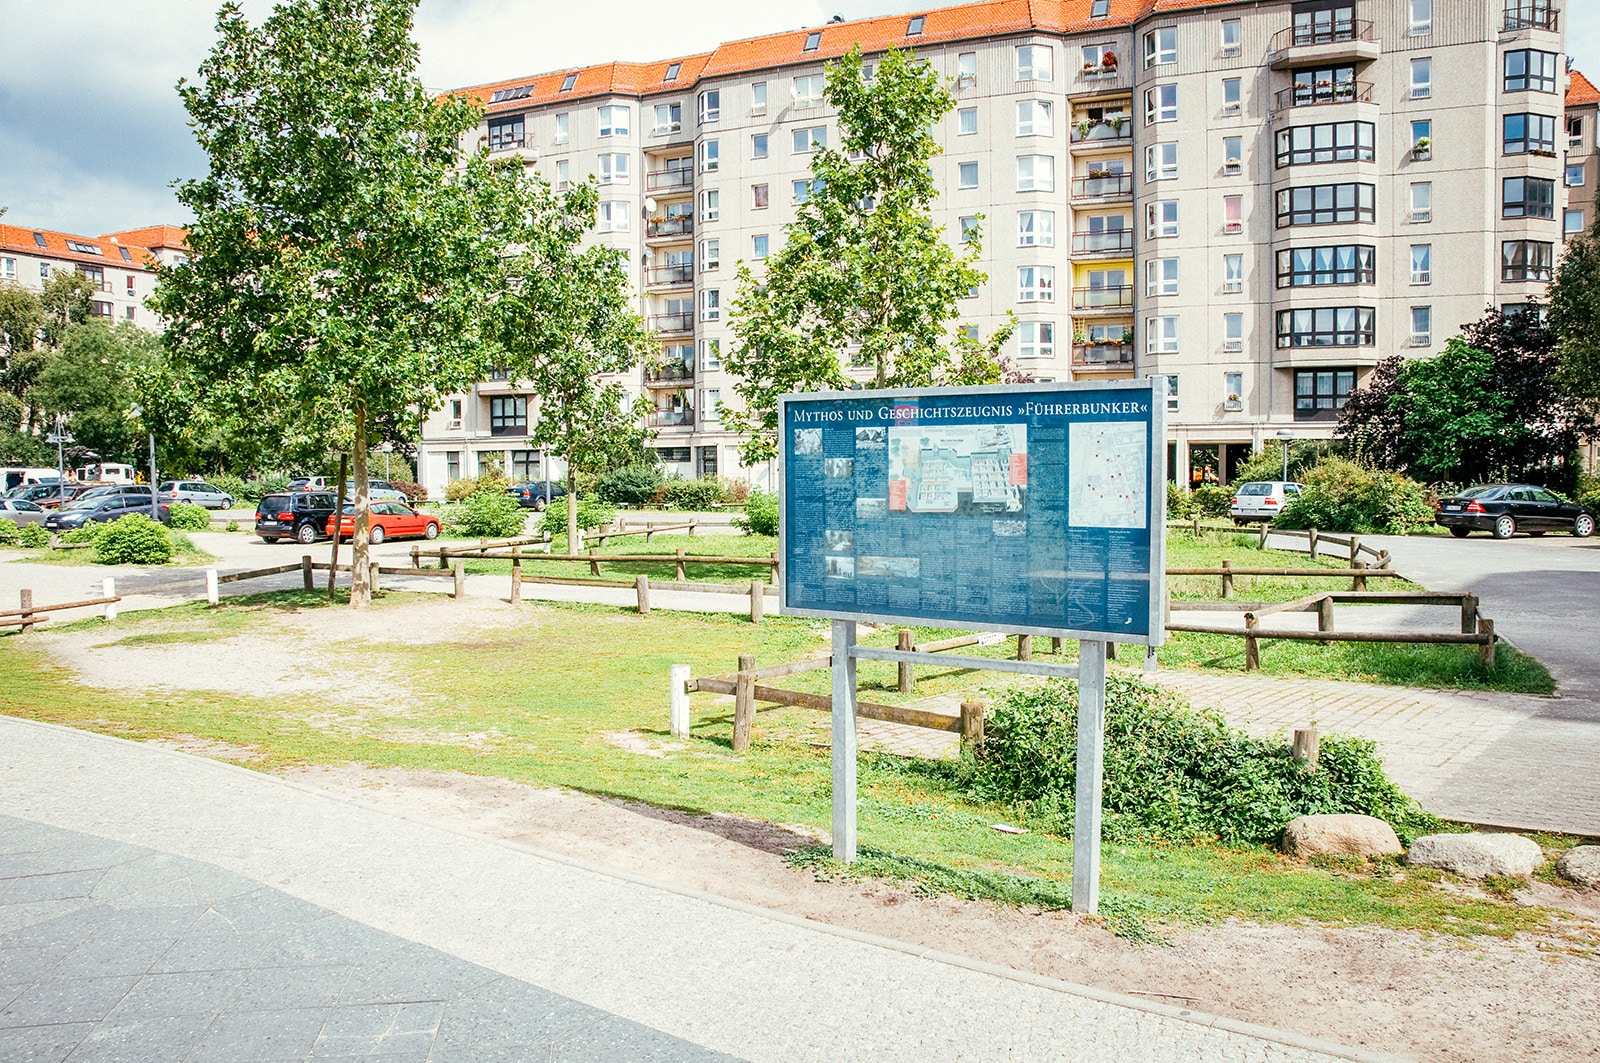 Site of the Führerbunker - Hitler's Chancellery Gardens